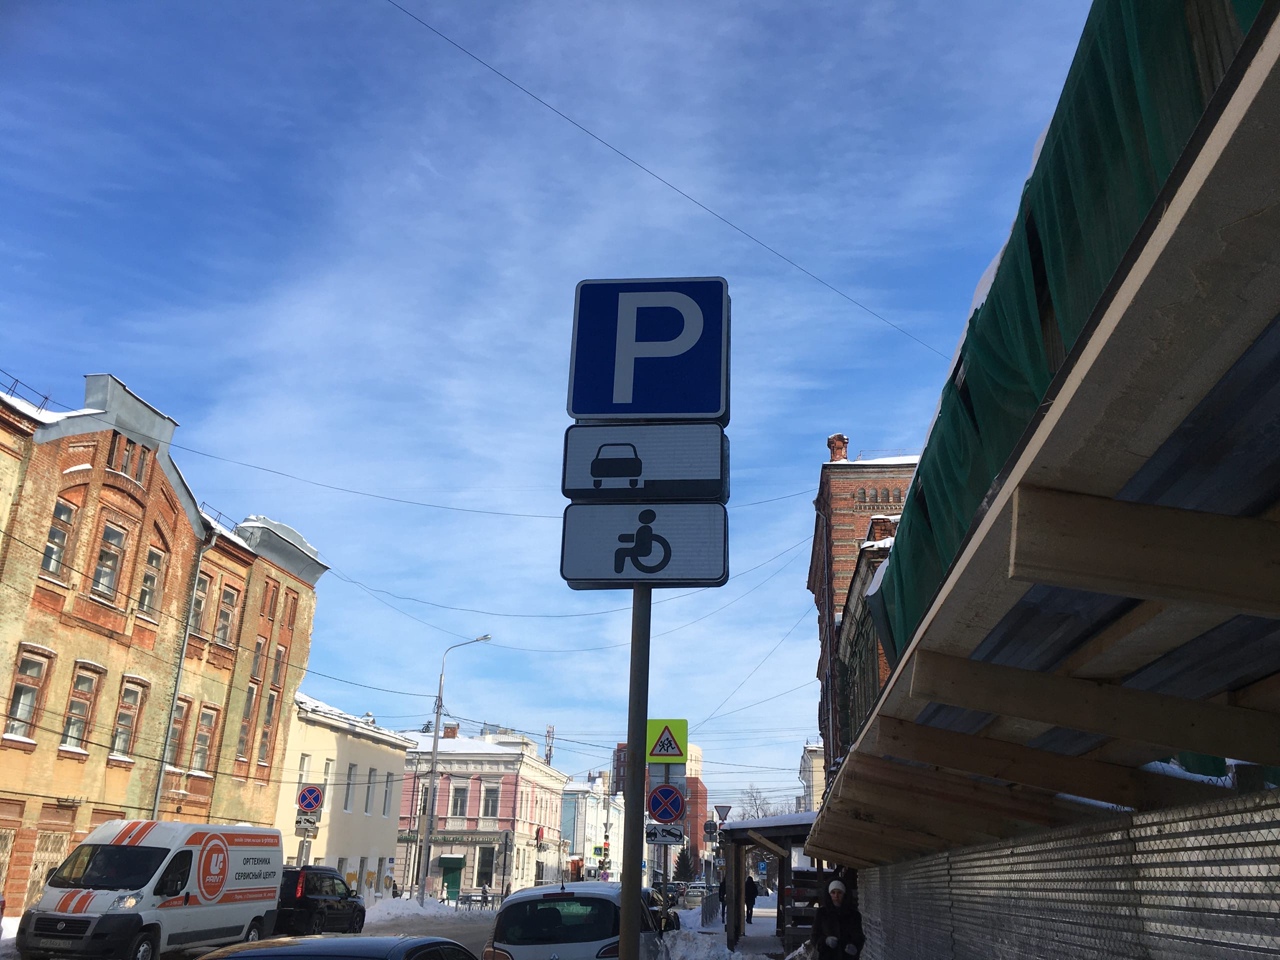 Парковка в Перми оказалась самой дешевой среди крупных городов РФ